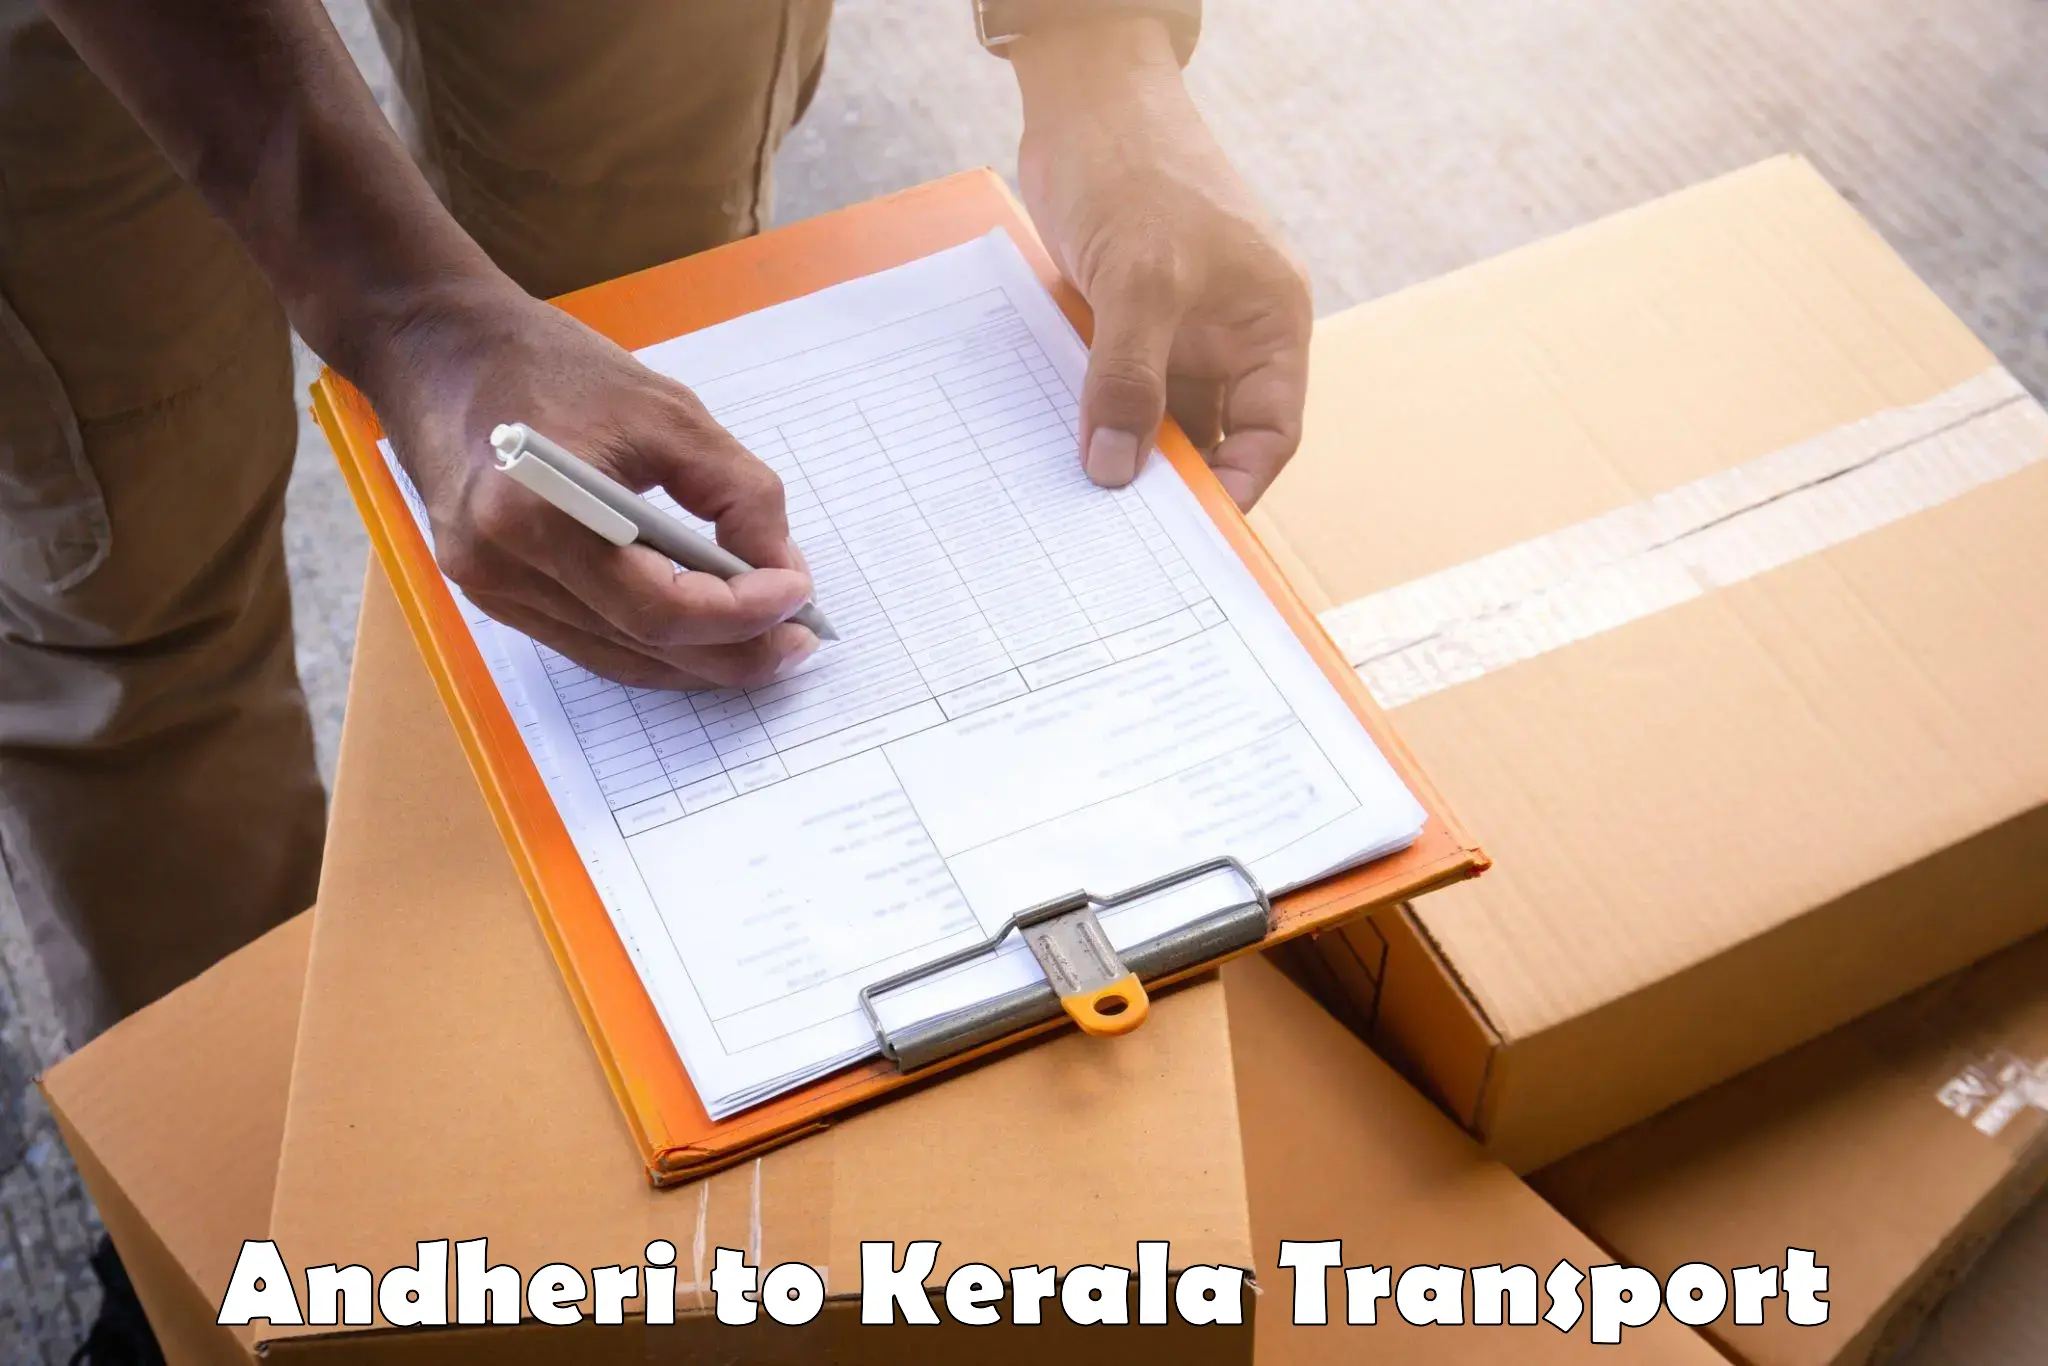 Transport in sharing Andheri to IIT Palakkad